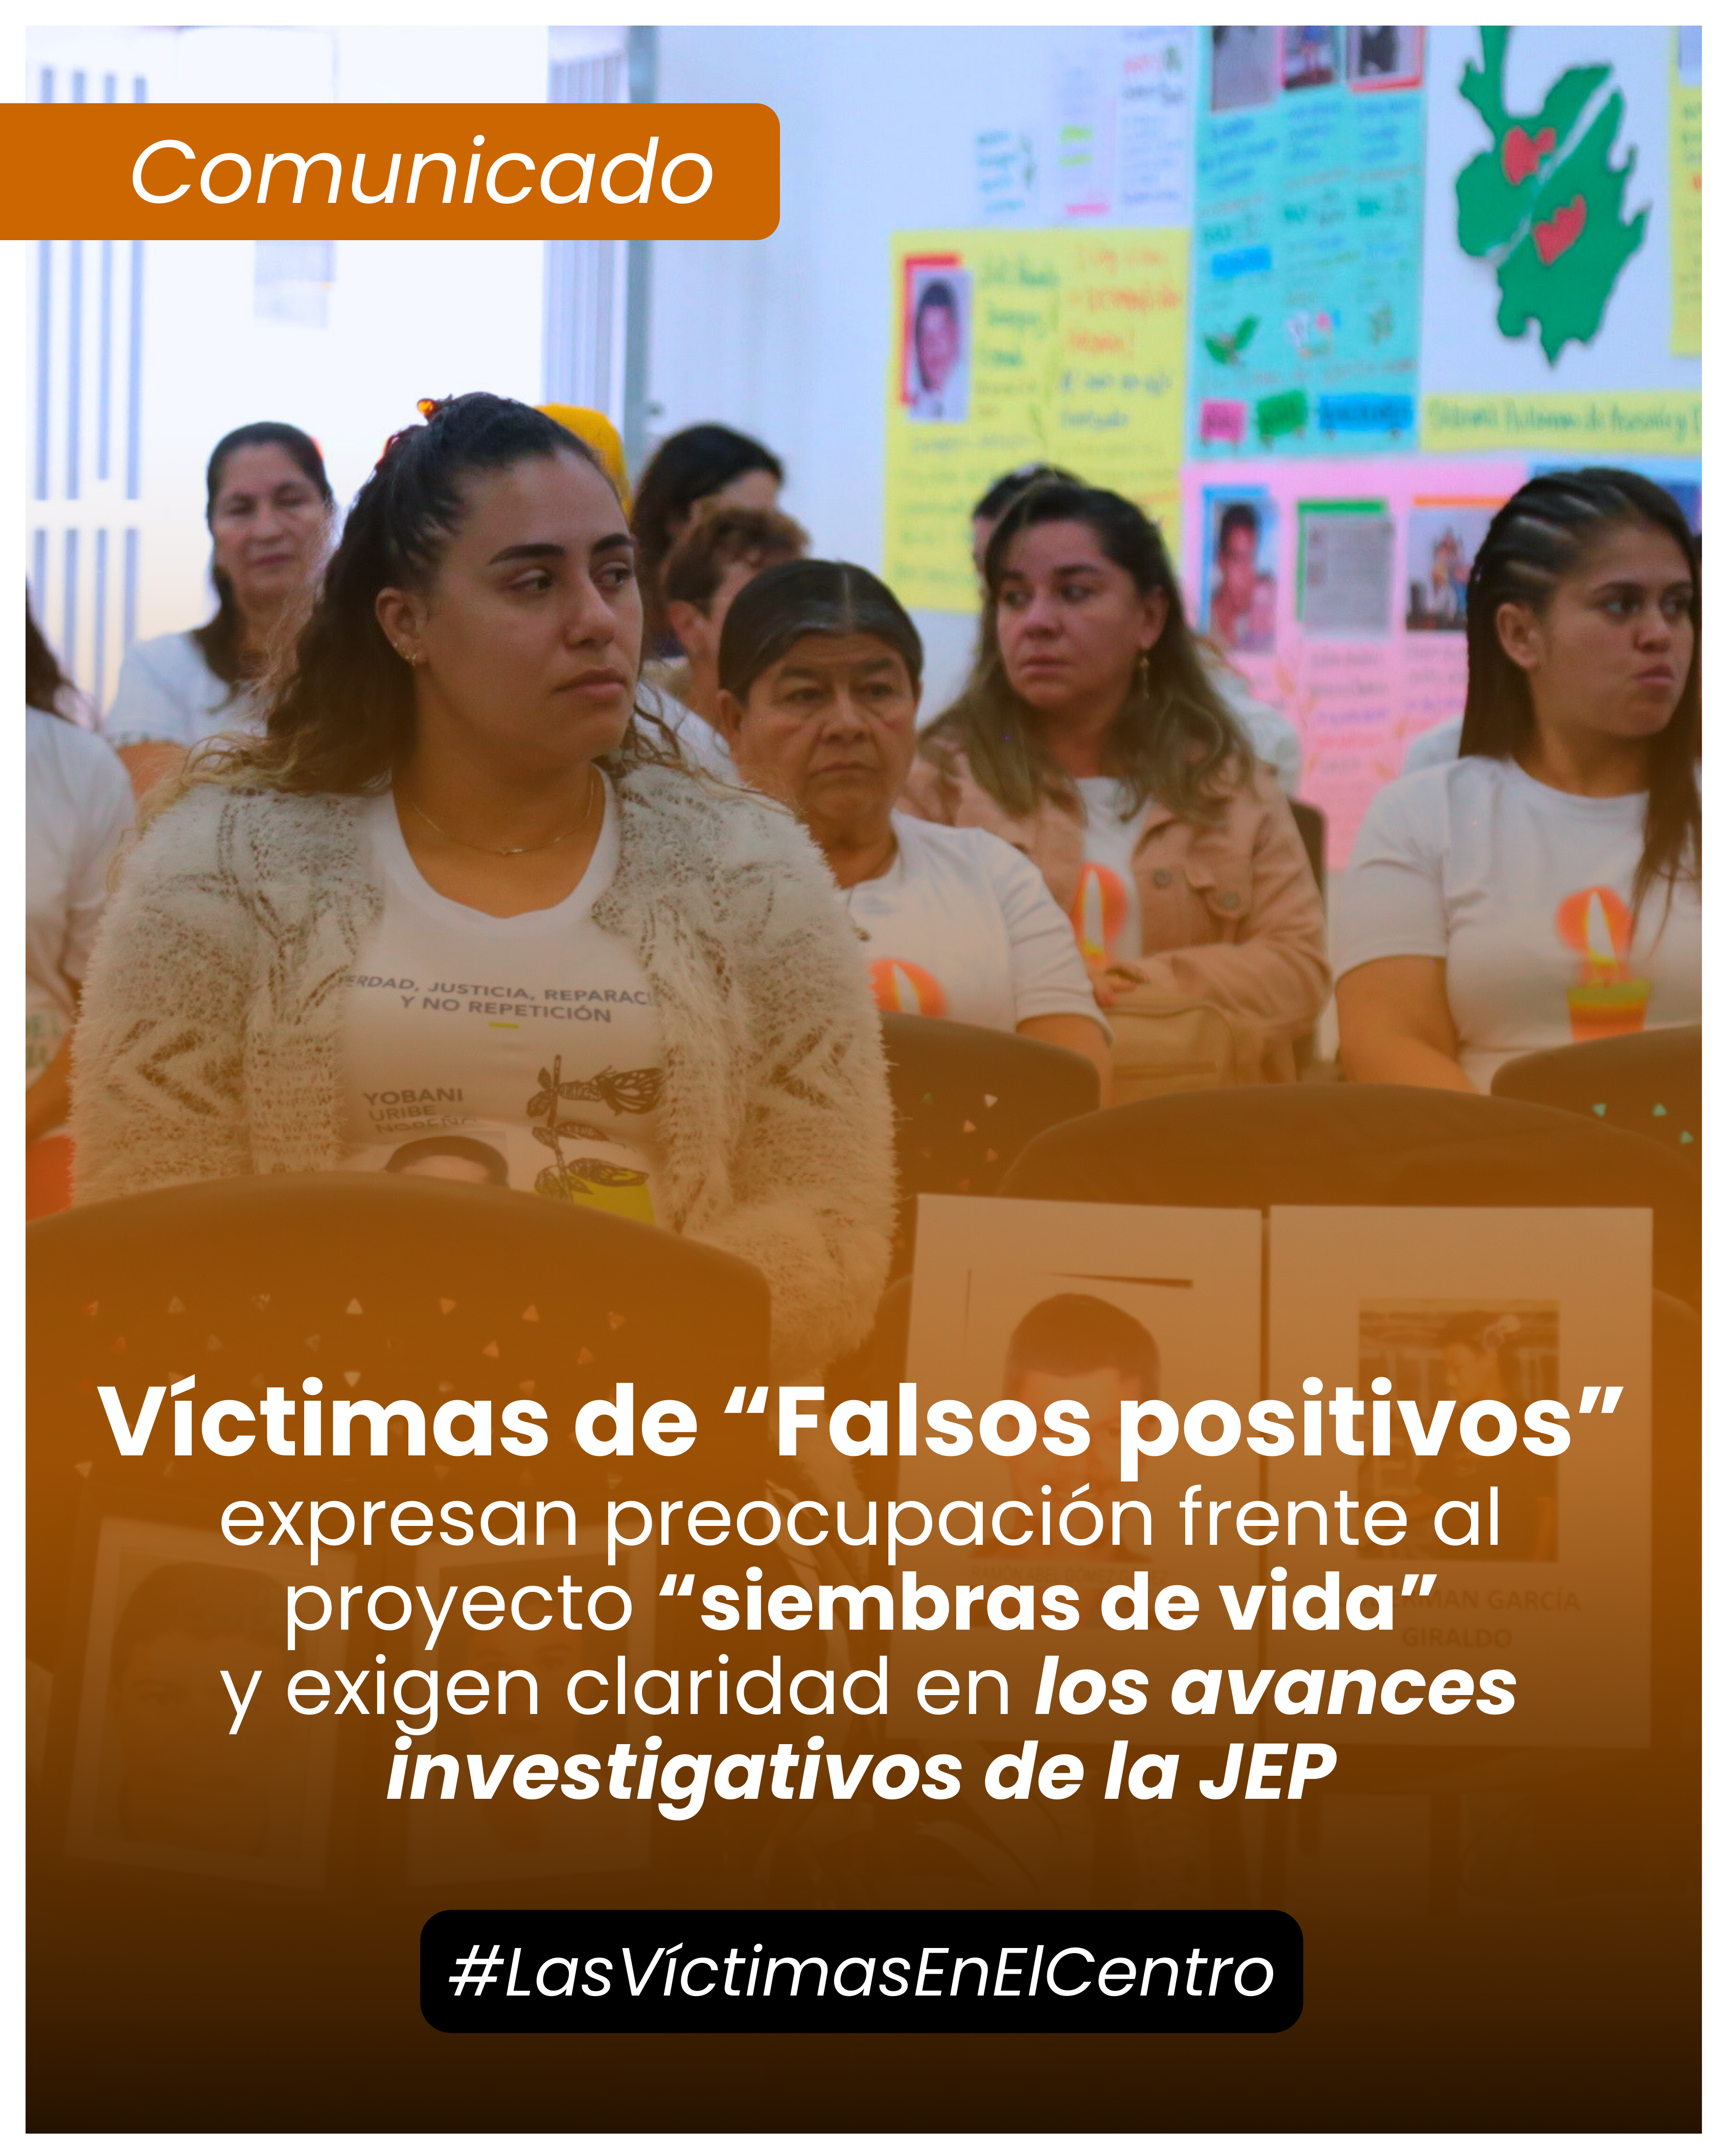 Víctimas de falsos positivos expresan preocupación frente al proyecto “siembras de vida” y exigen claridad en los avances investigativos de la JEP.